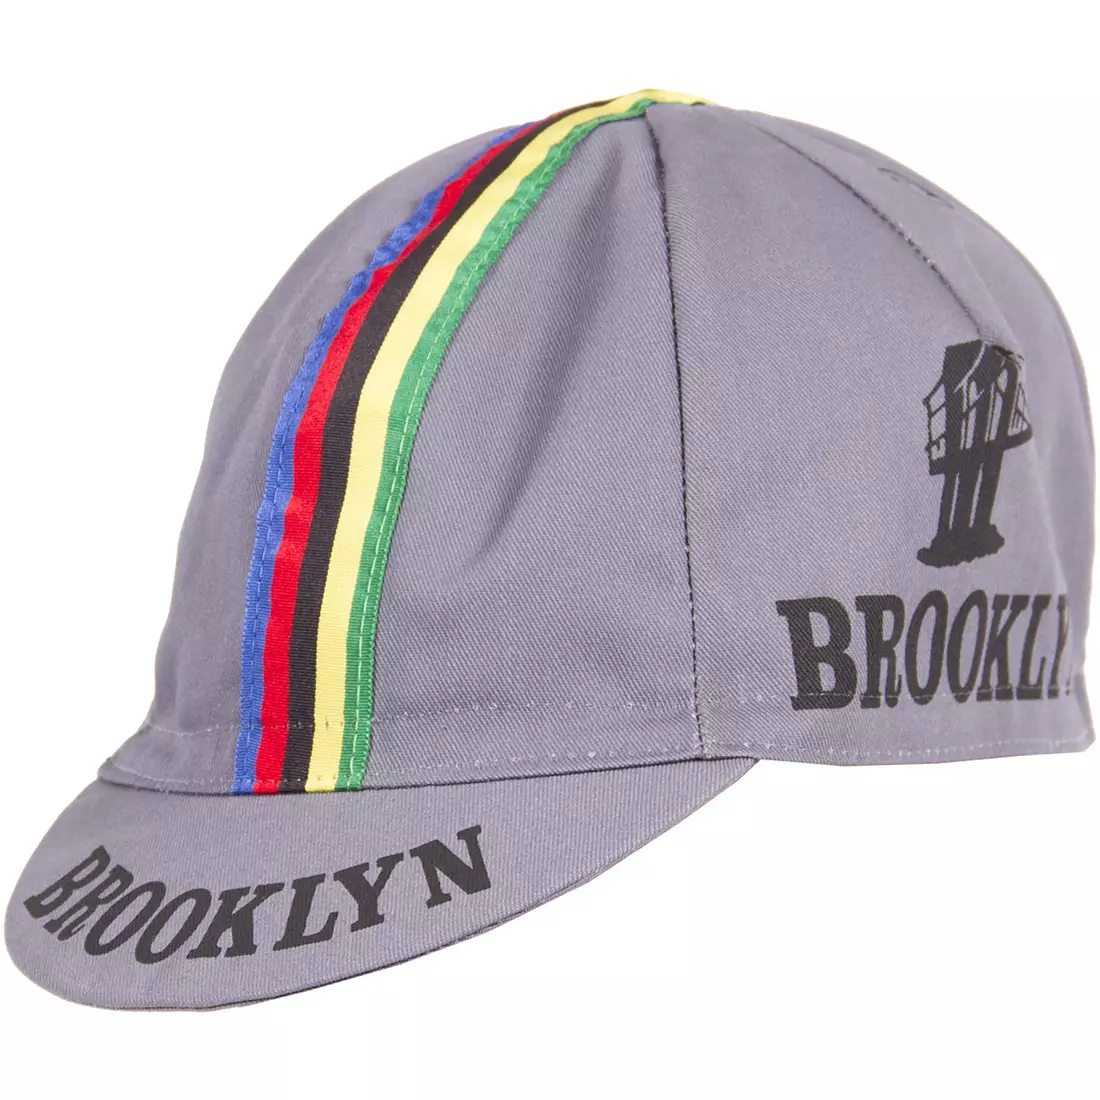 Şapcă de ciclism GIORDANA SS18 - Brooklyn - Gri cu bandă dungi GI-S6-COCA-BROK-GRAY mărime unică